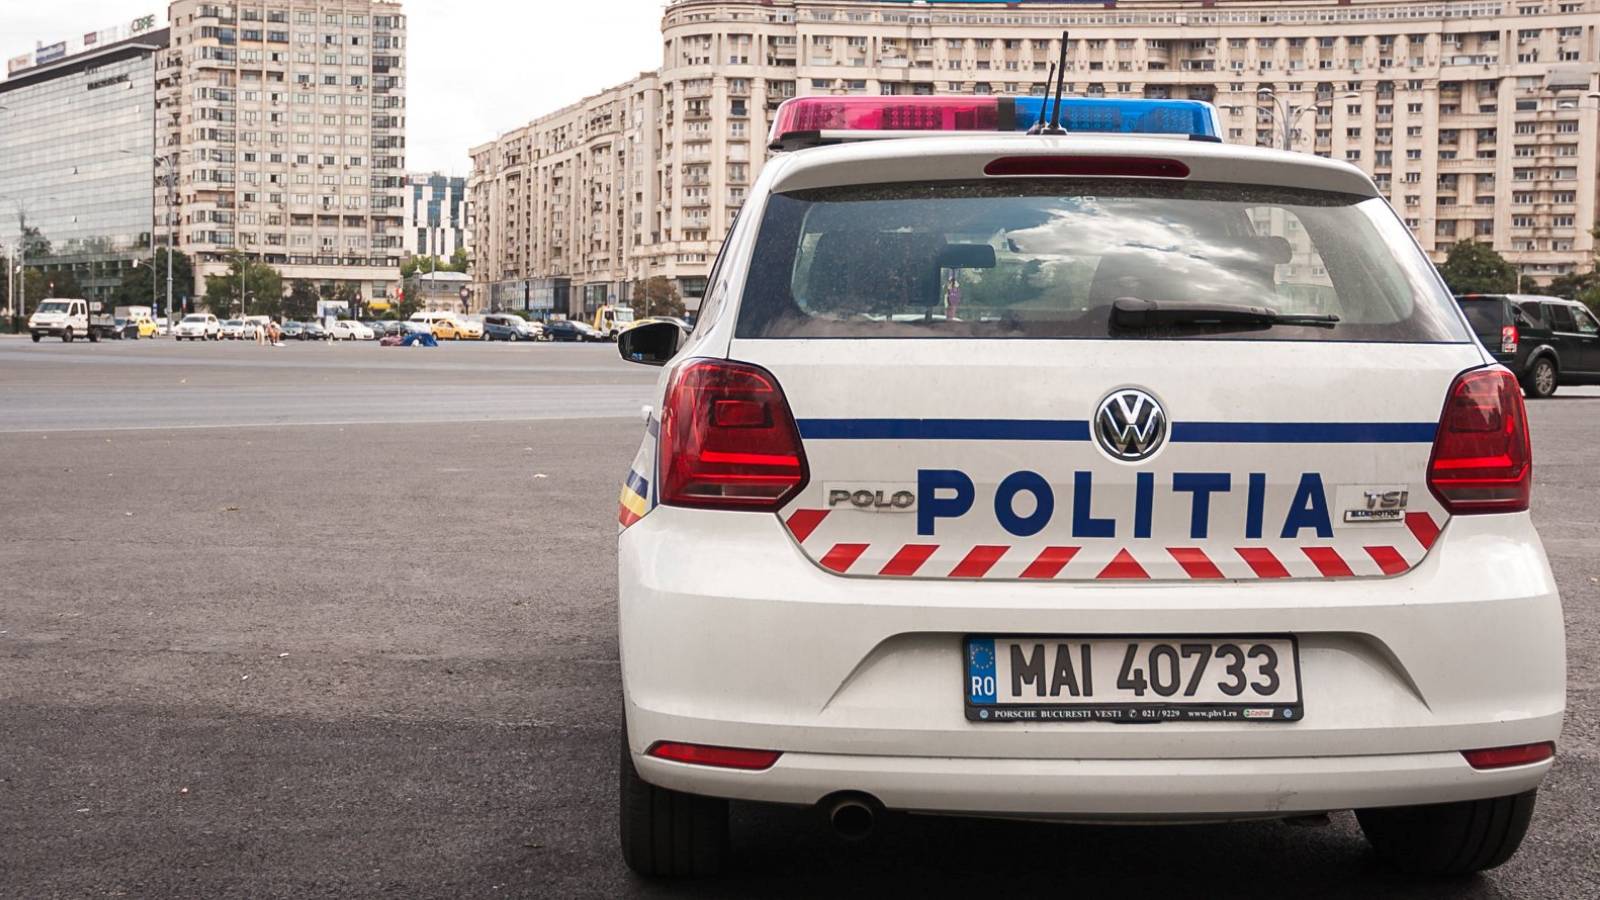 La policía rumana advierte sobre agentes de policía falsos